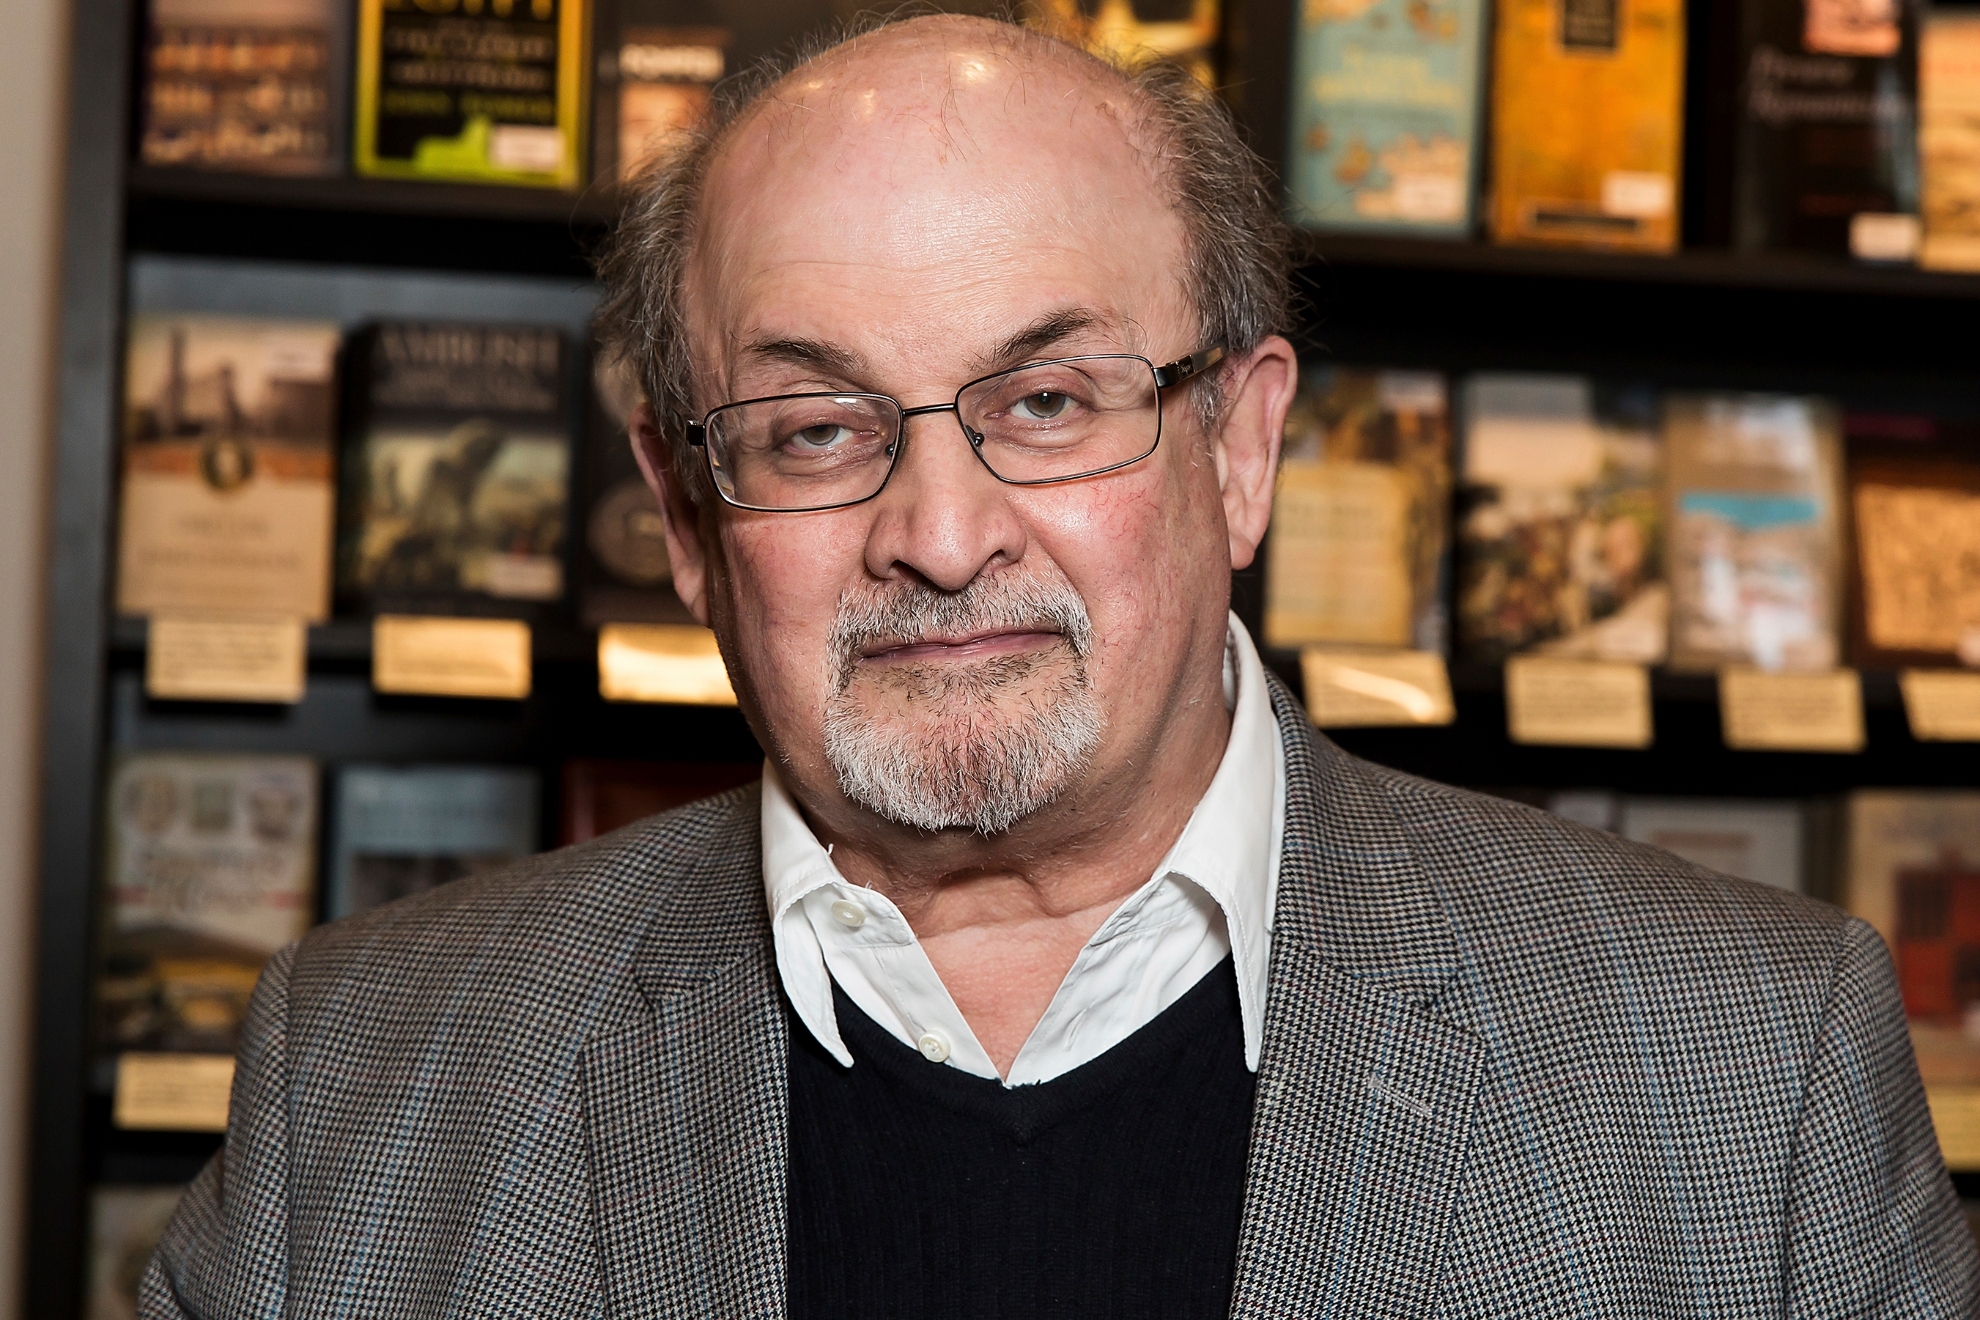 ¿Qué le pasó al escritor Salman Rushdie en Nueva York? Reporte de última hora y todas las noticias | Reuters